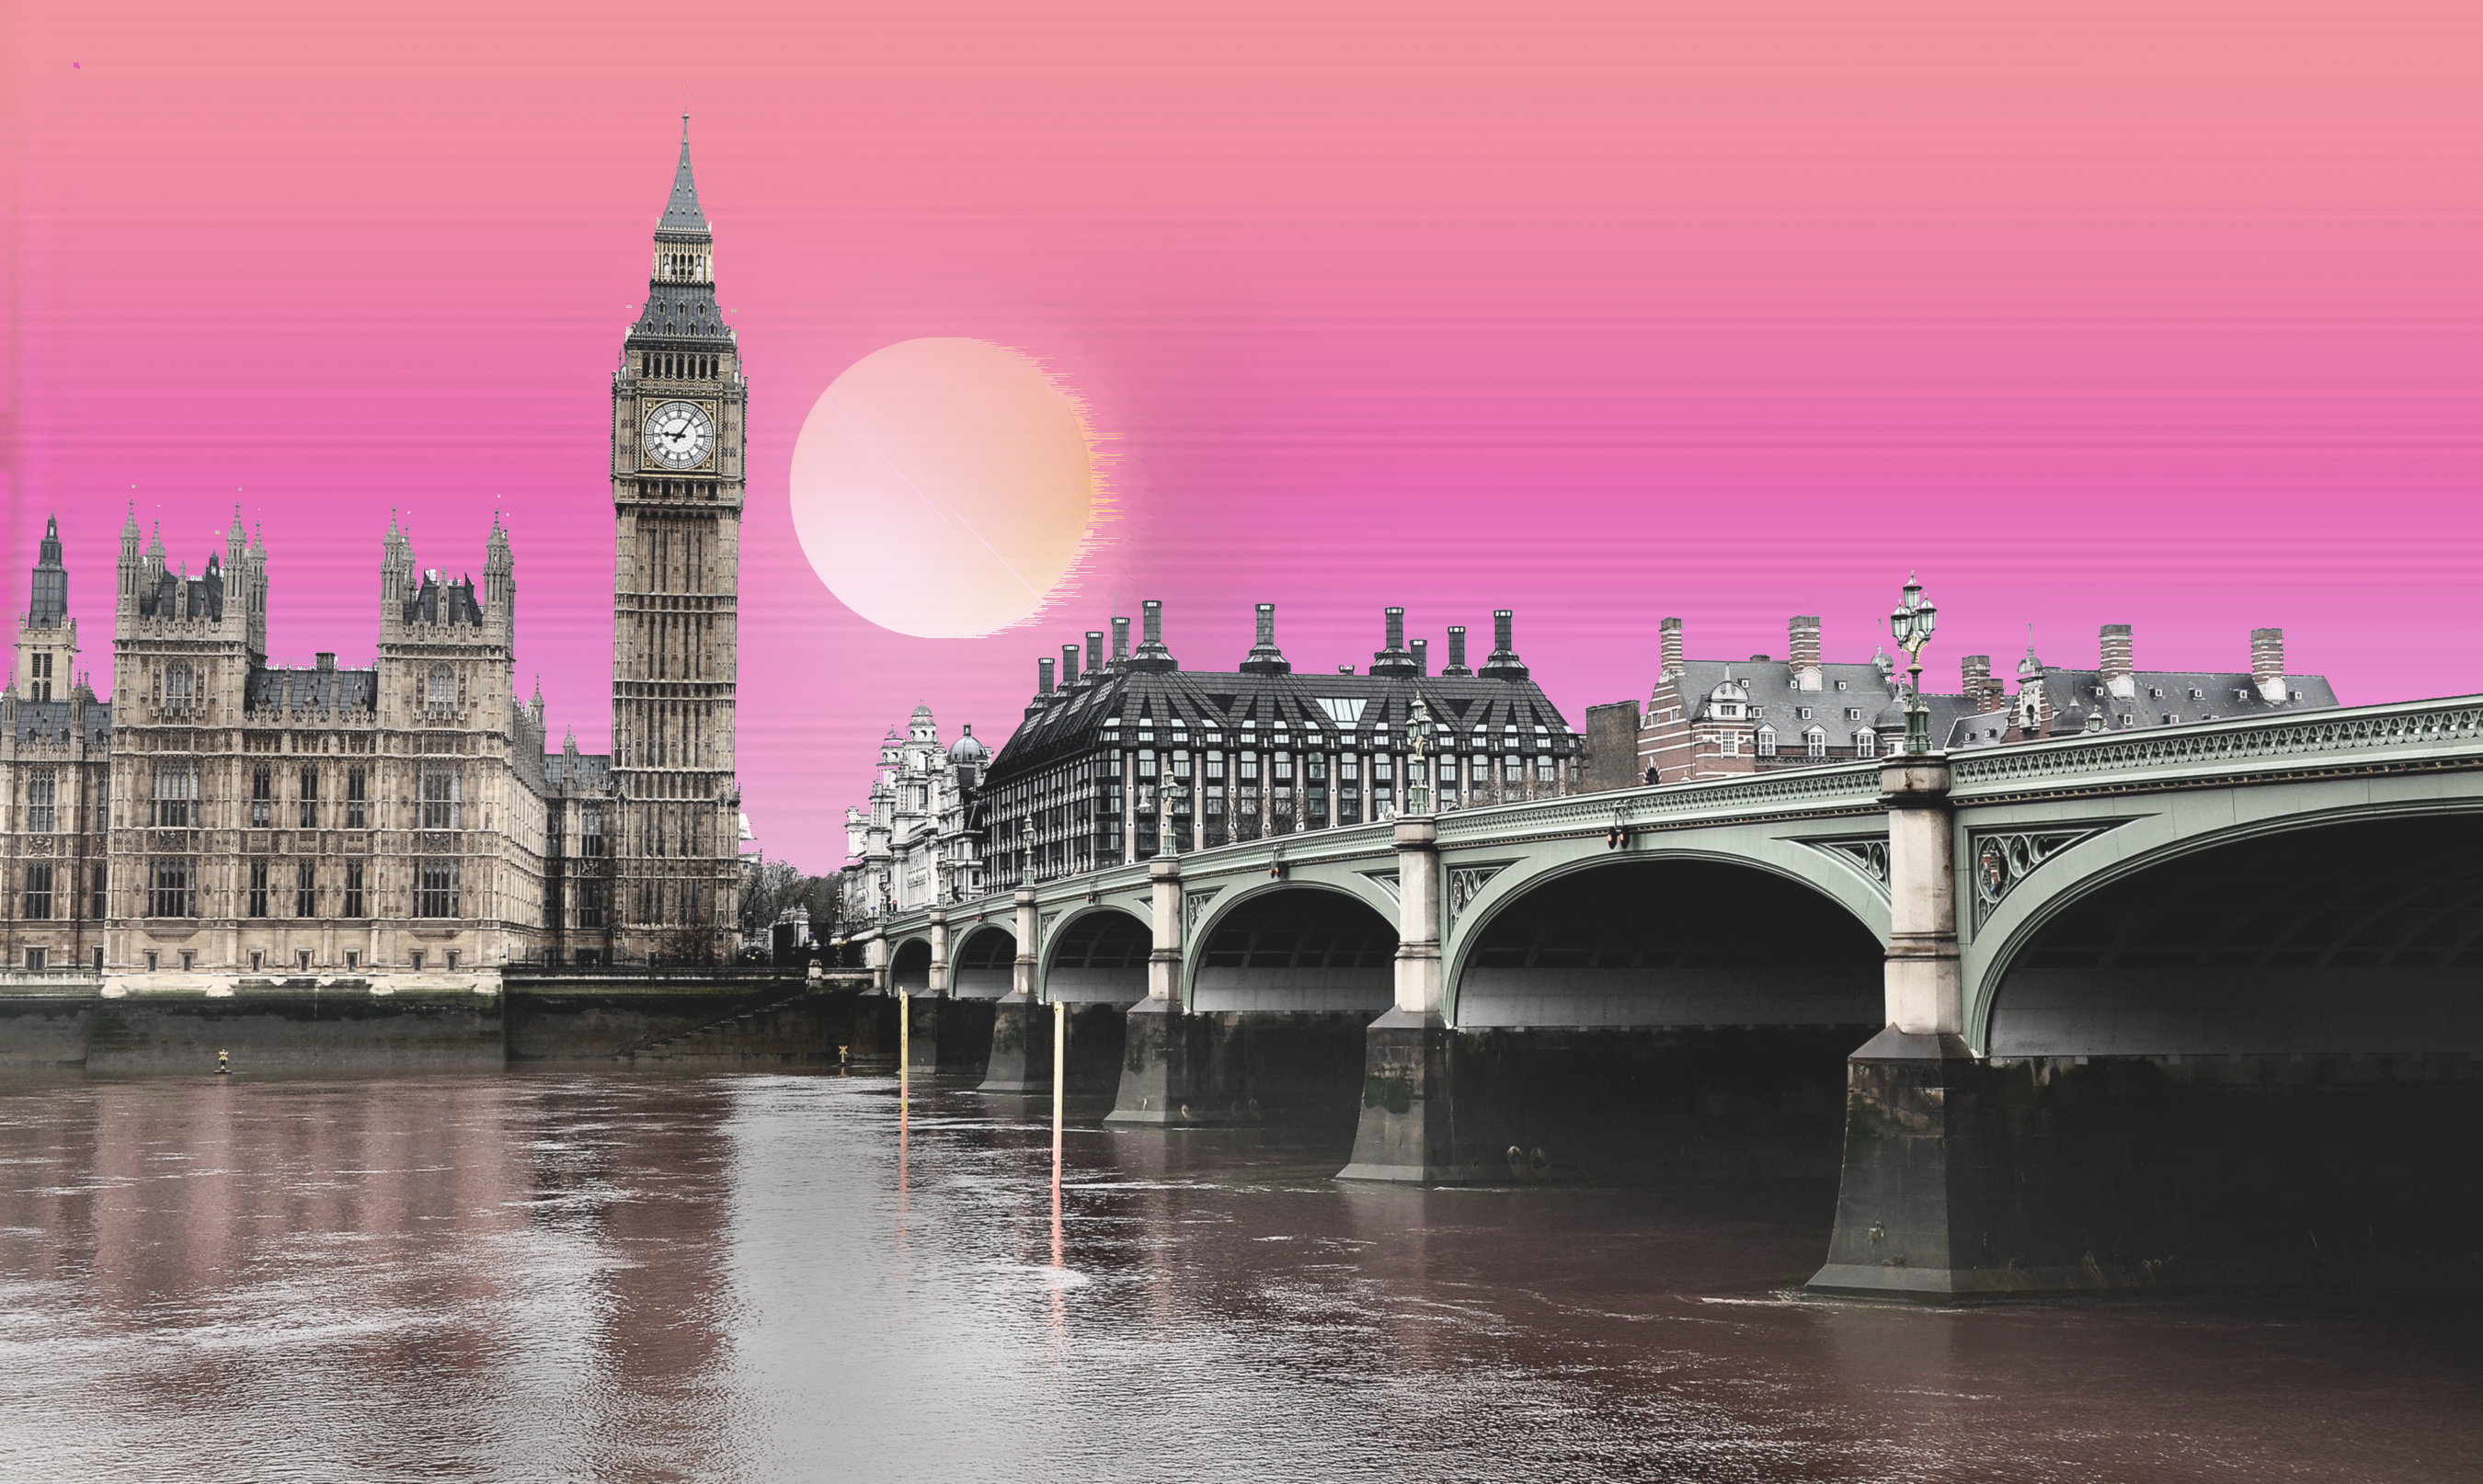 artistic, vaporwave, big ben, bridge, london, palace of westminster, united kingdom